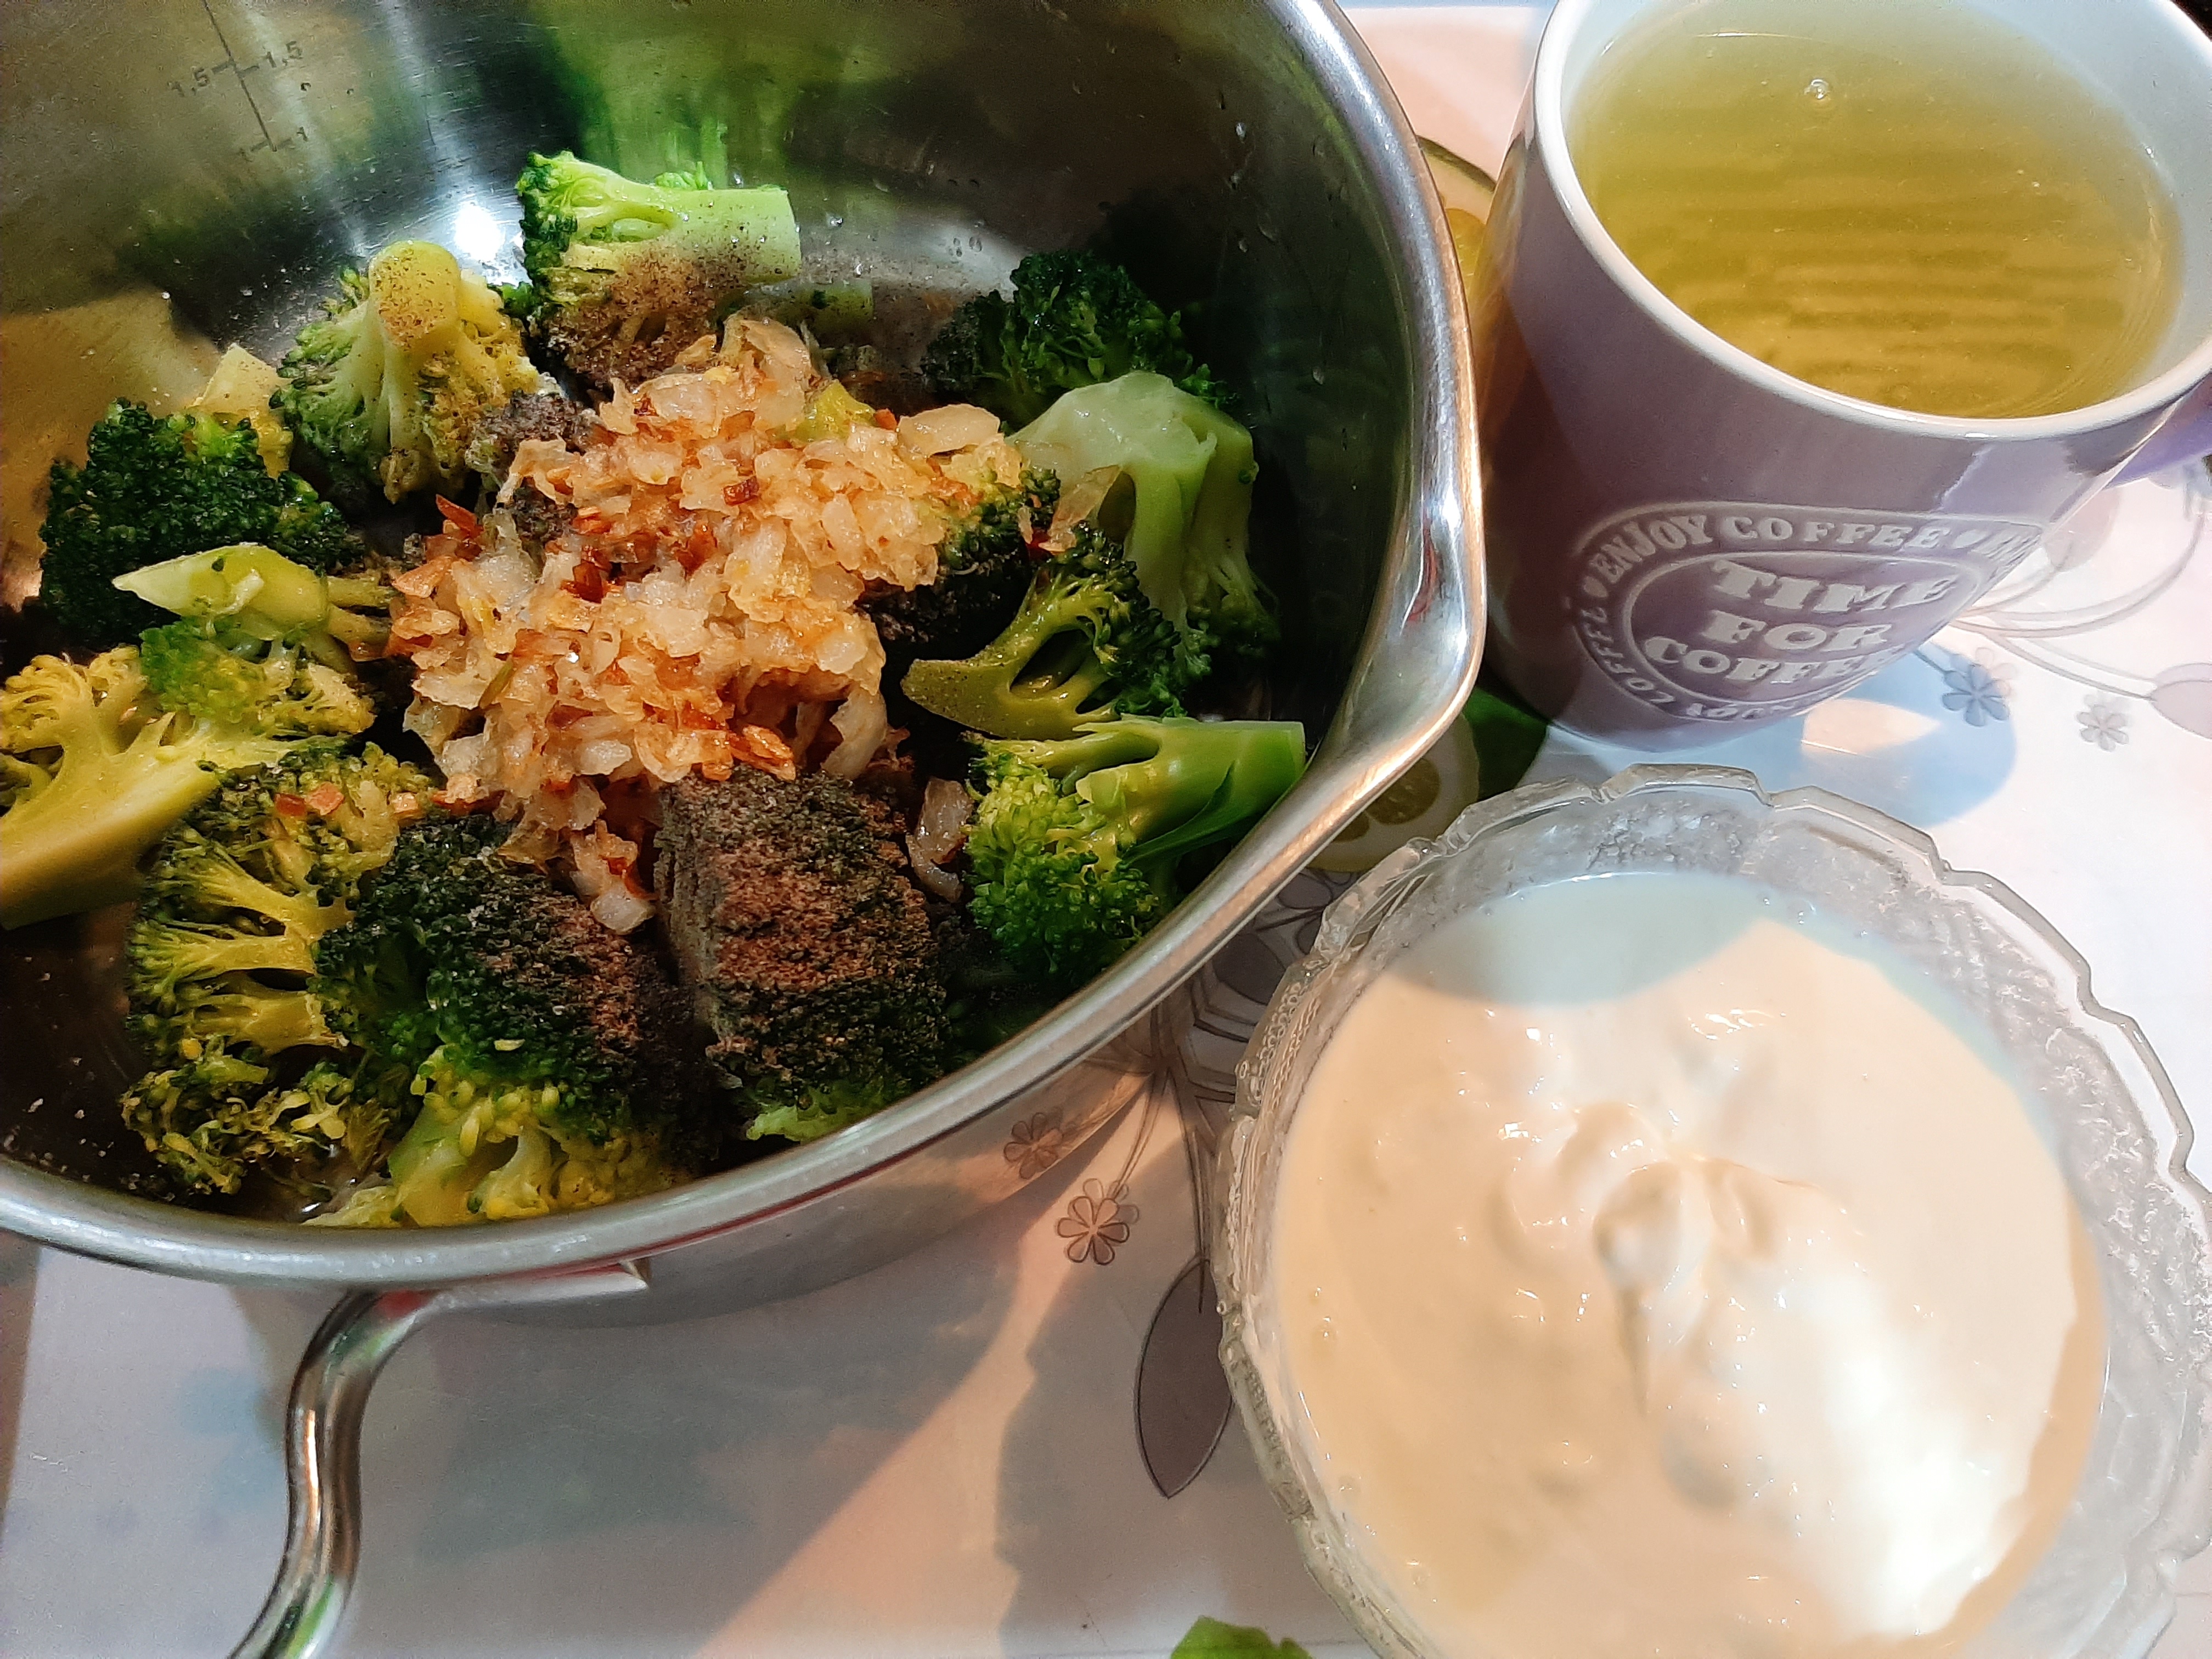 Supa crema cu broccoli